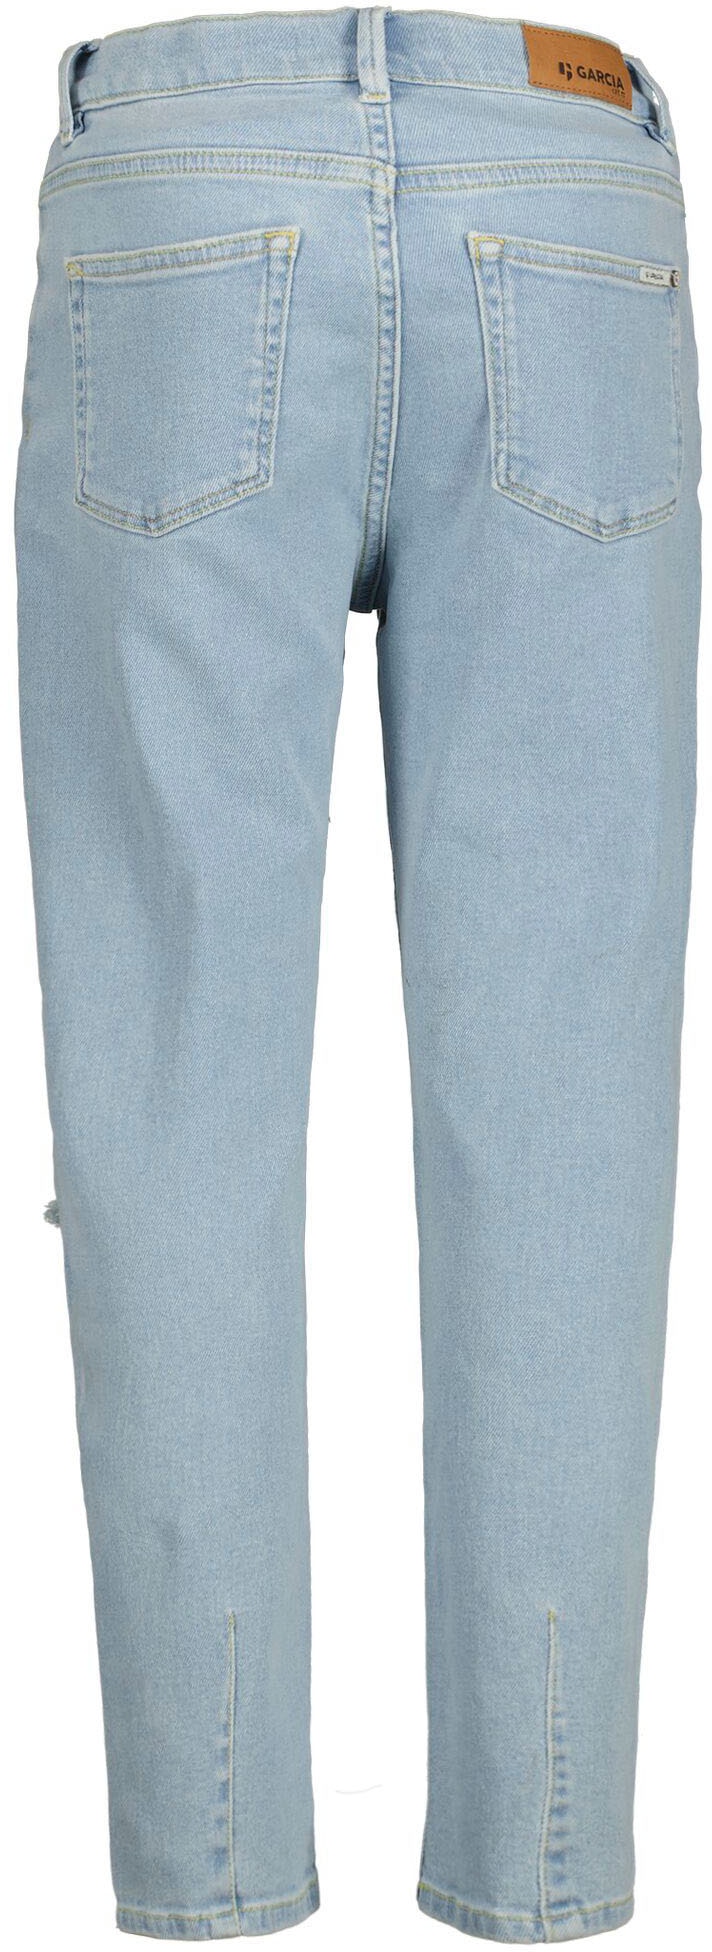 Garcia Destroyed-Jeans »Evelin«, for GIRLS zu attraktiven Preisen | OTTO